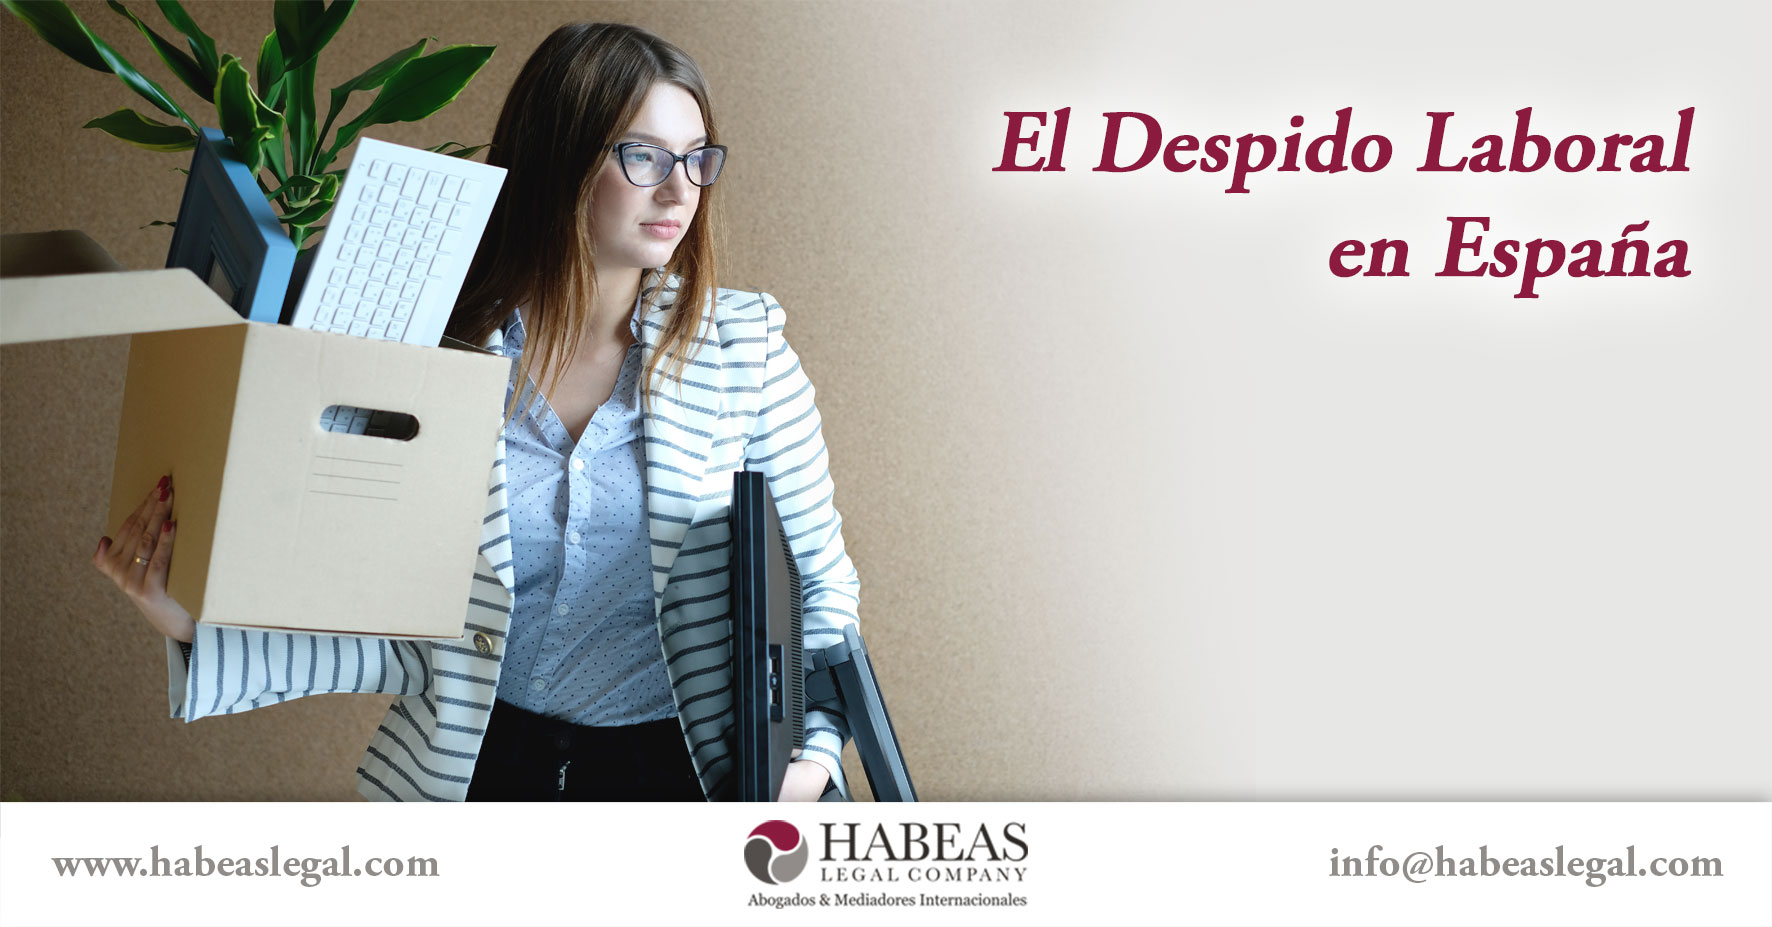 El Despido Laboral Espana Habeas Legal - Blog